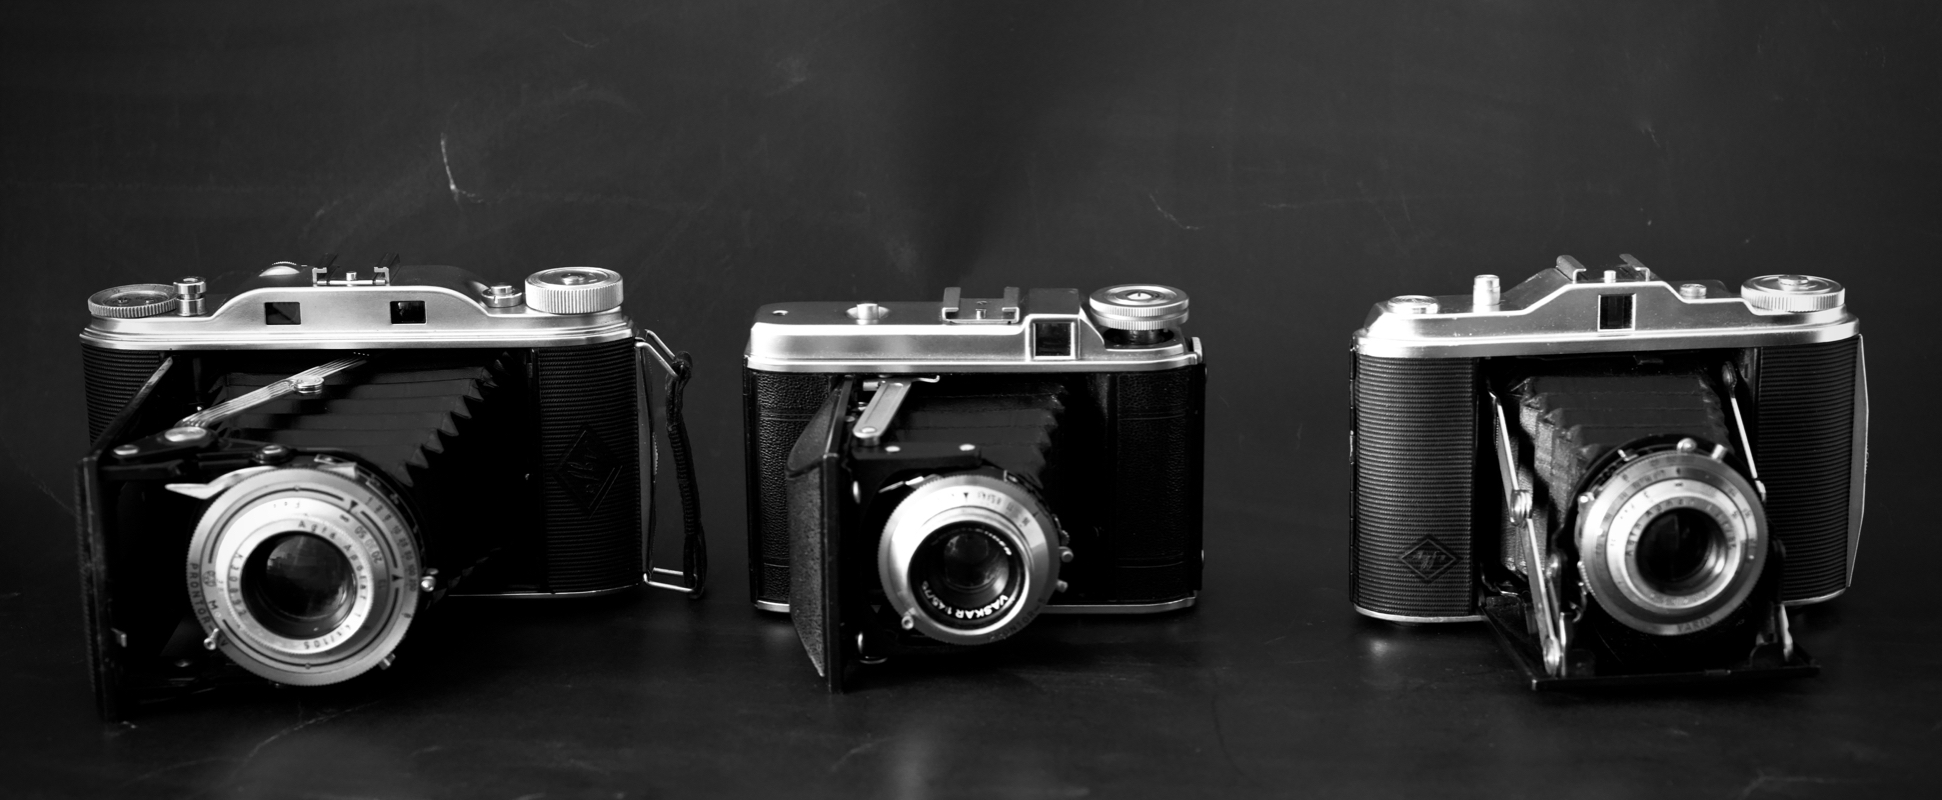 Bellows cameras